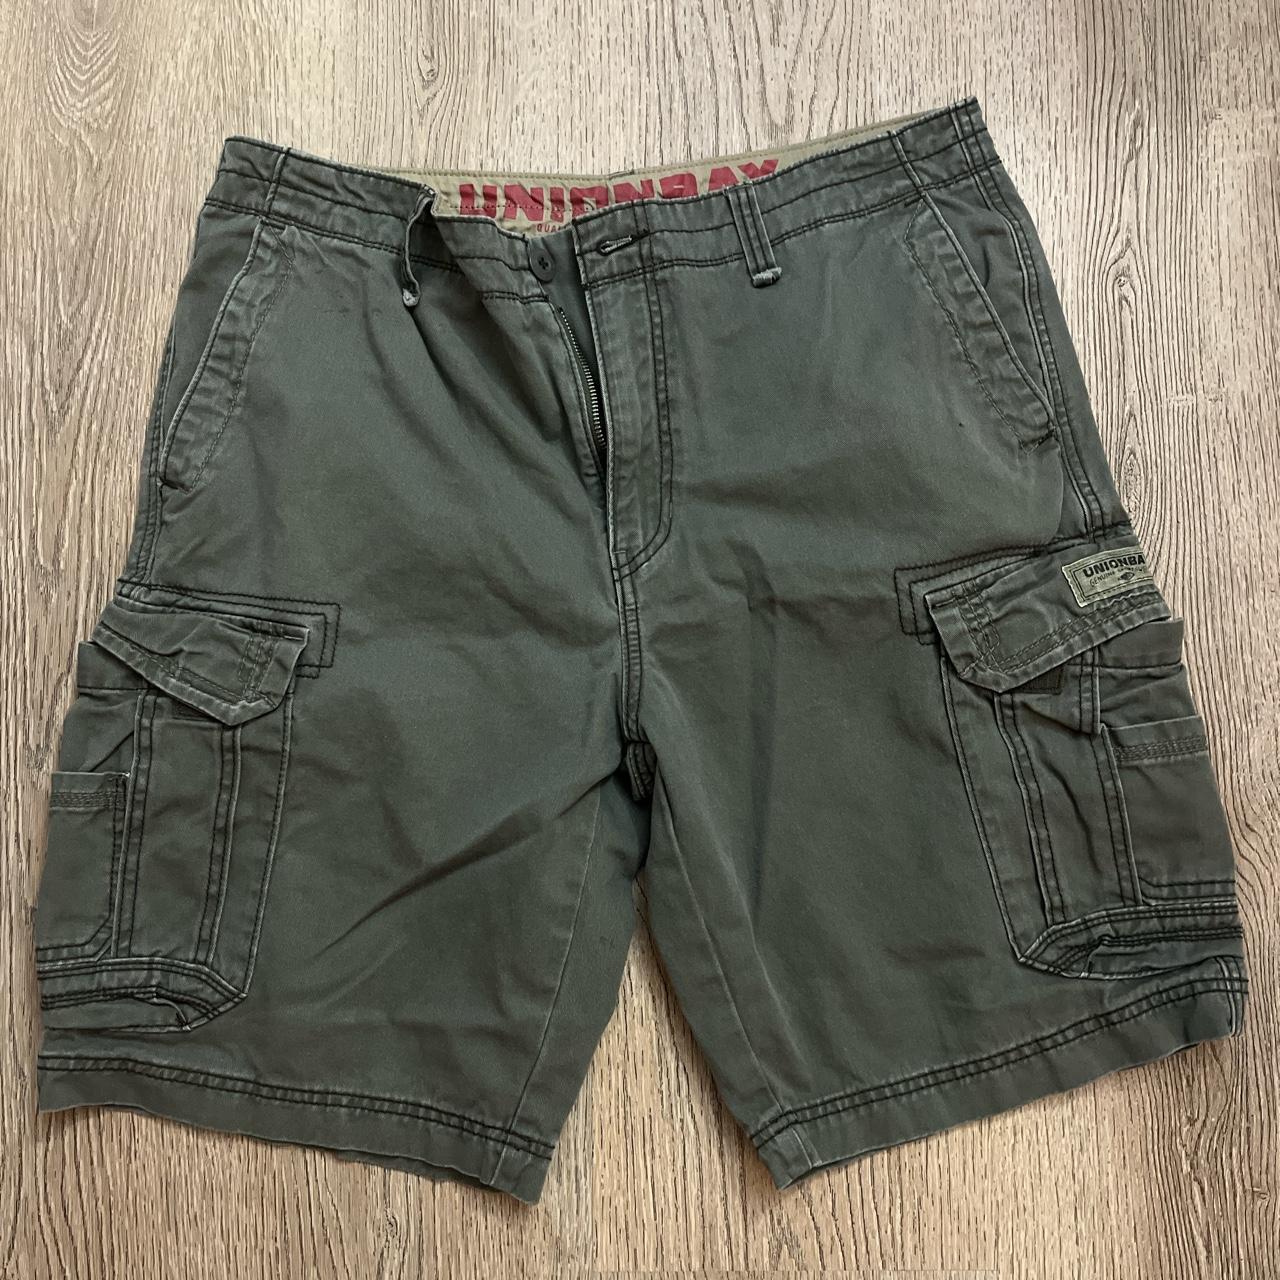 Nice green cargo shorts 🤝 Waist 36 length21 - Depop